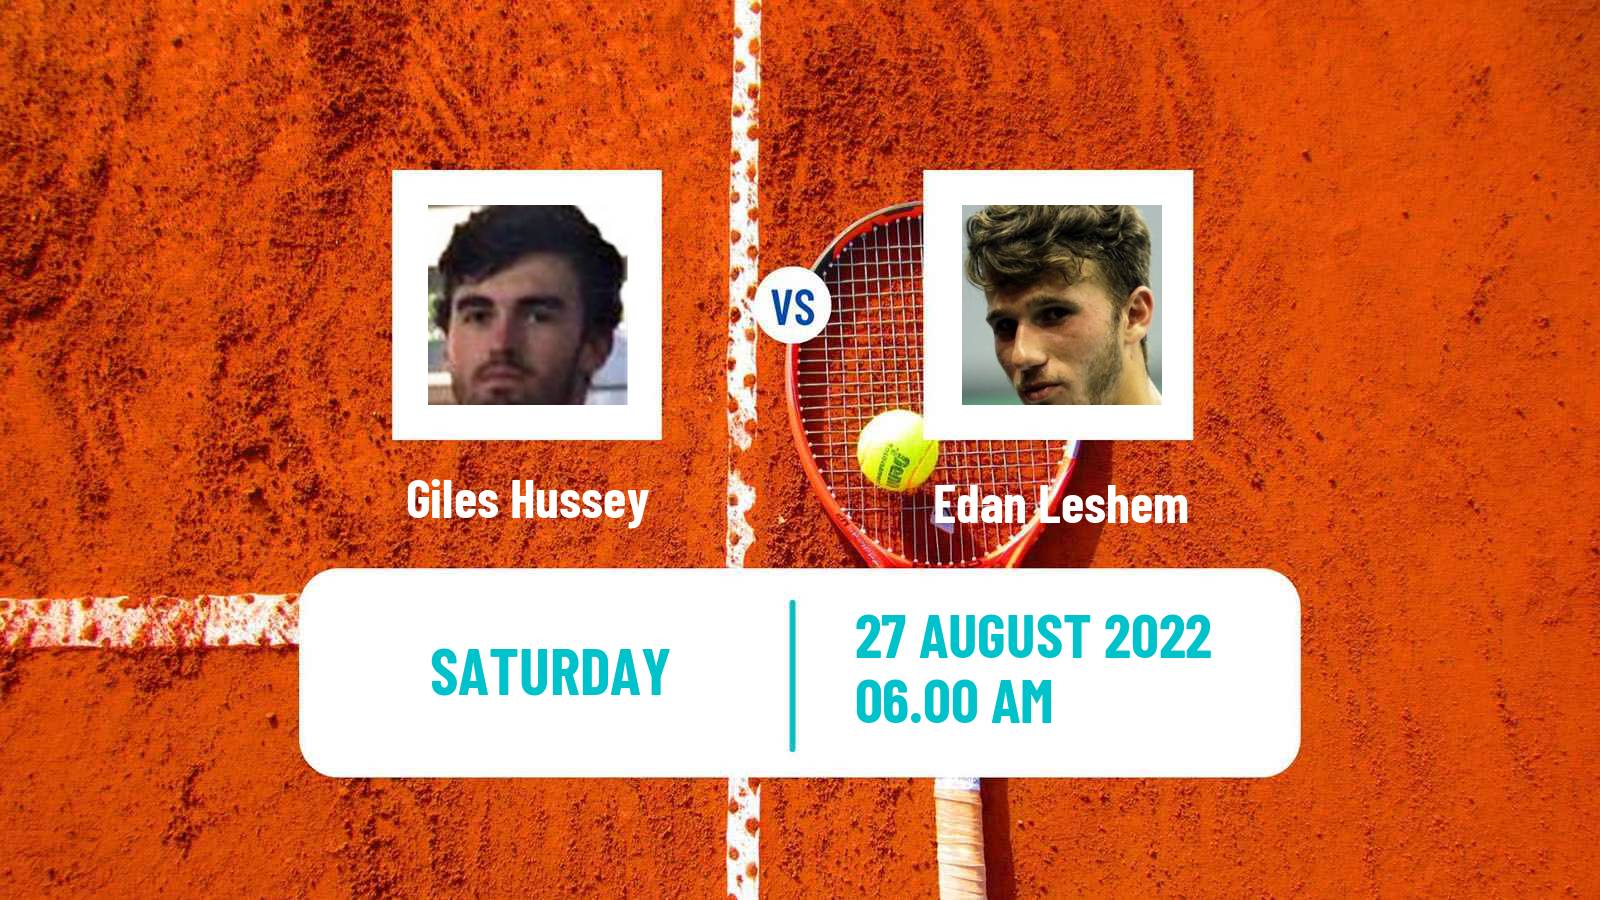 Tennis ITF Tournaments Giles Hussey - Edan Leshem